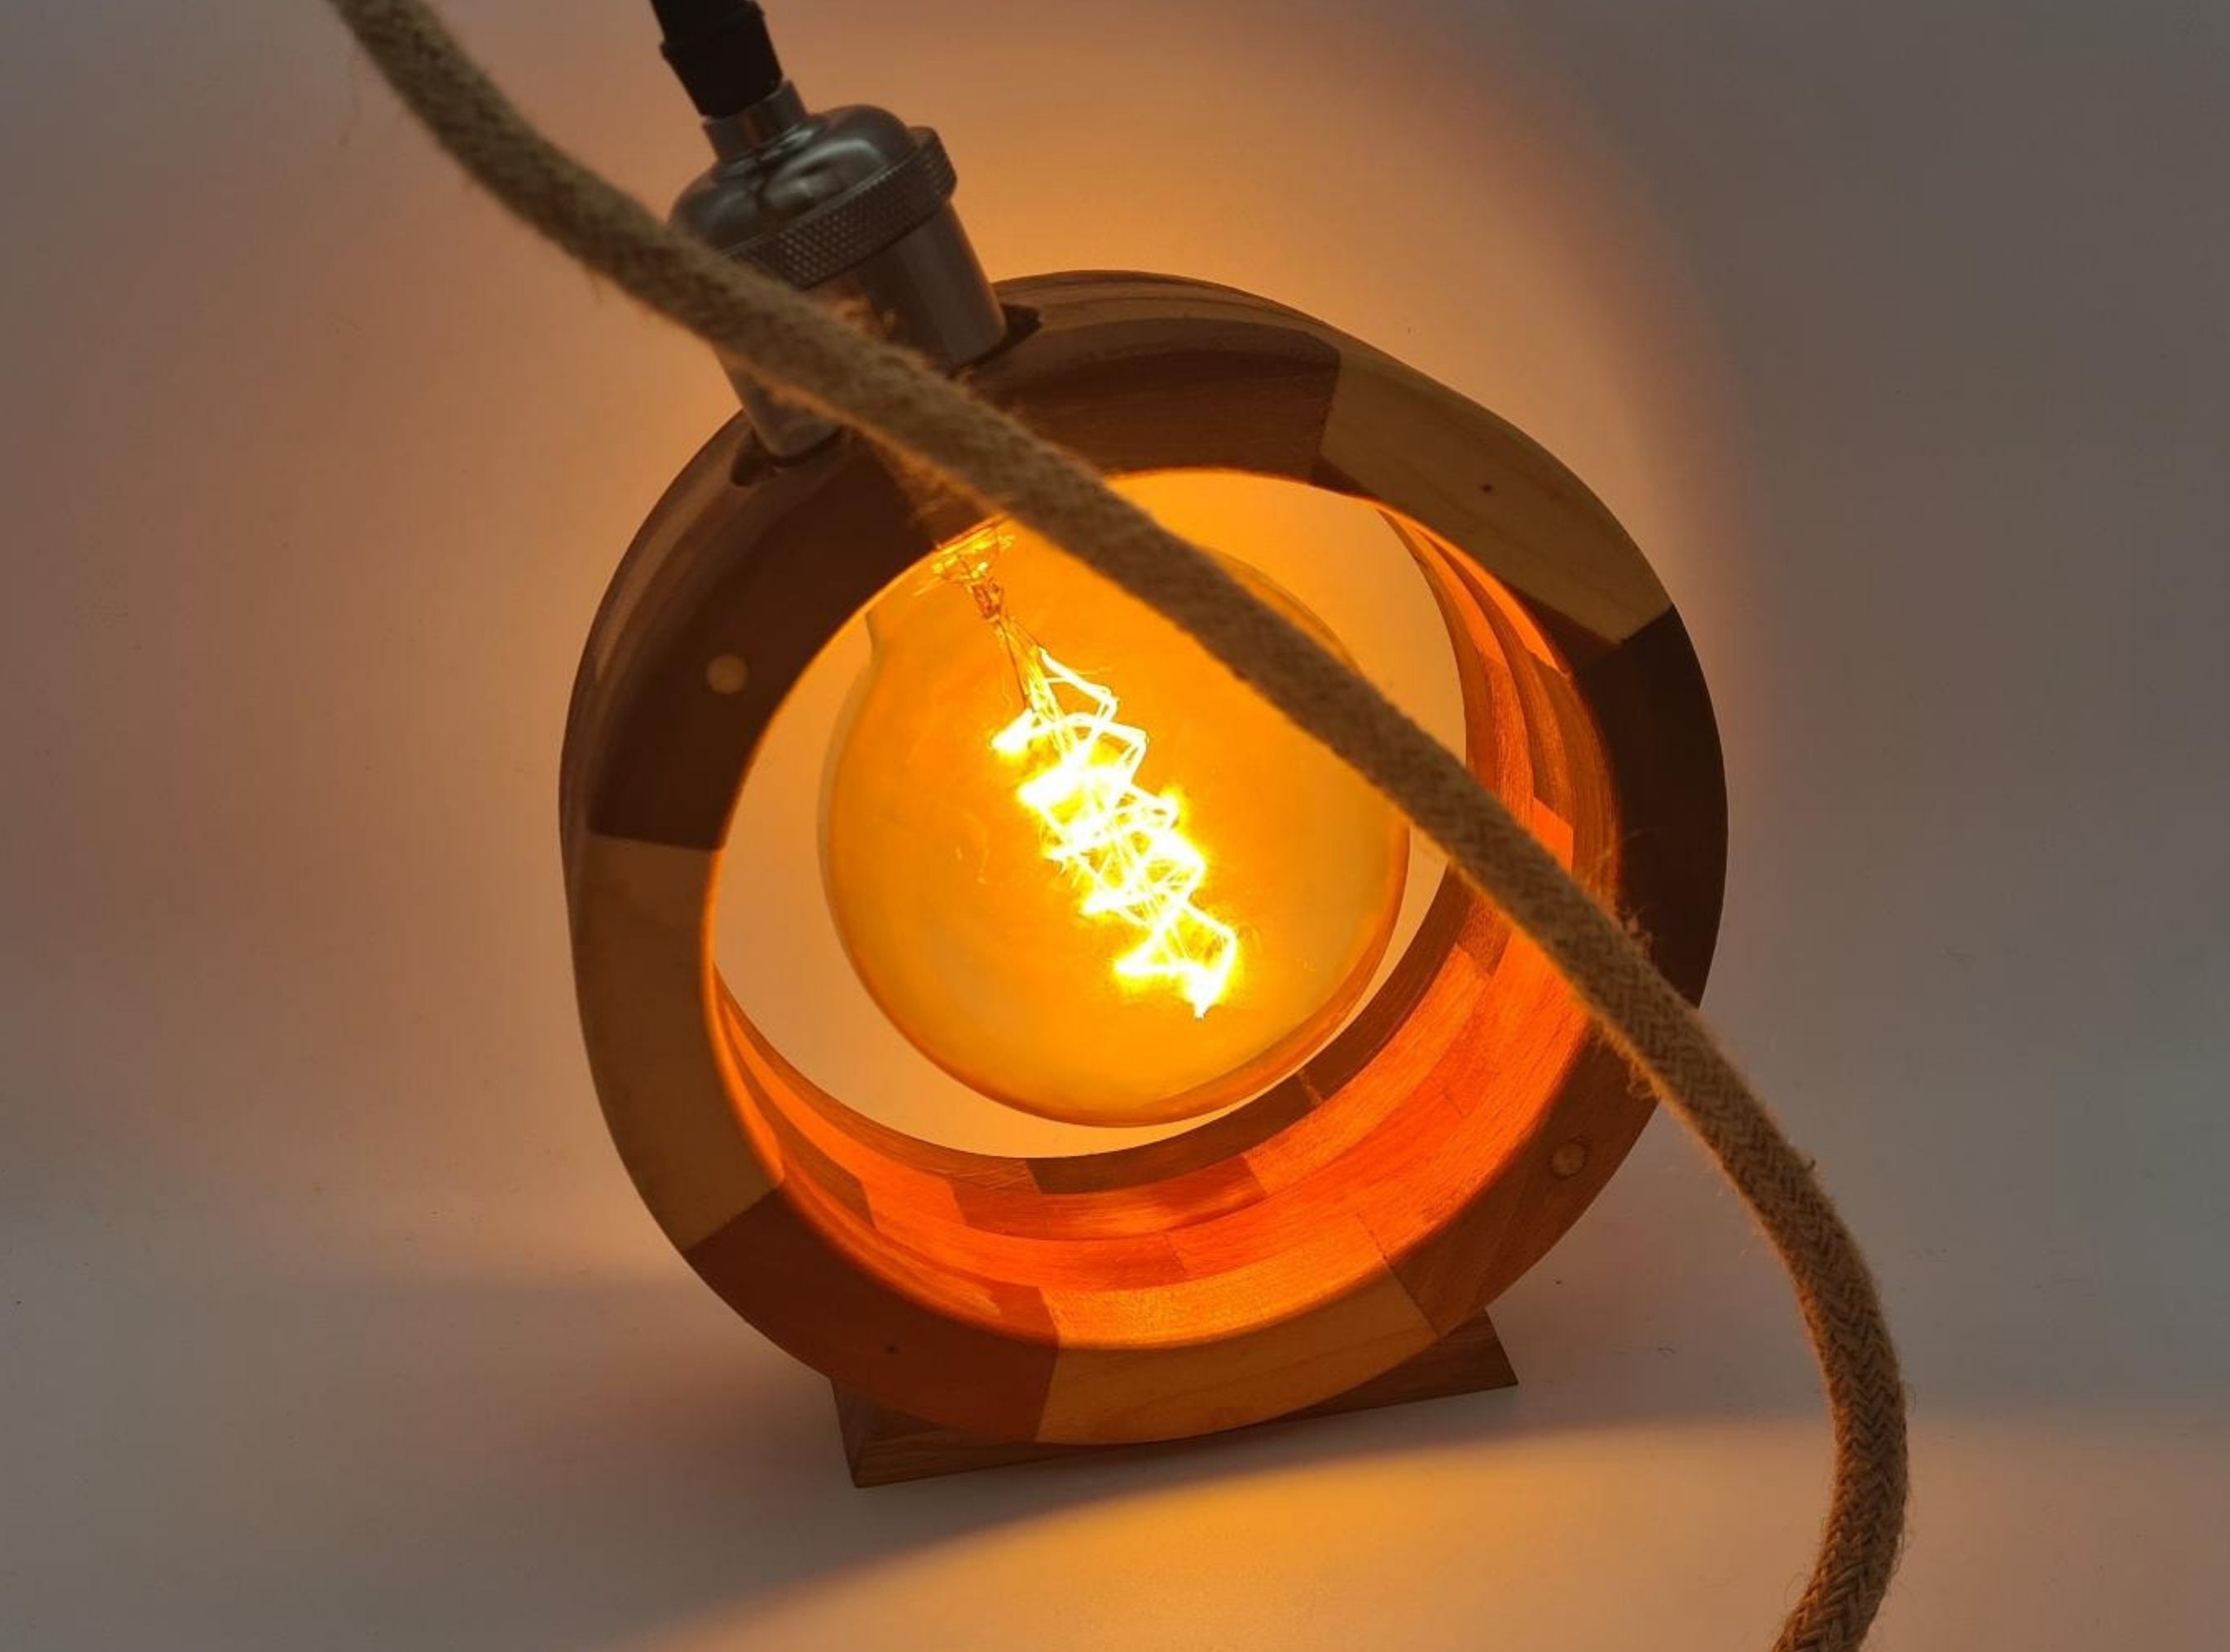 lampe en bois segmenté et tourné avec grande ampoule edison, lampe de bureau originale, luminaire à poser ou suspendre, design industriel